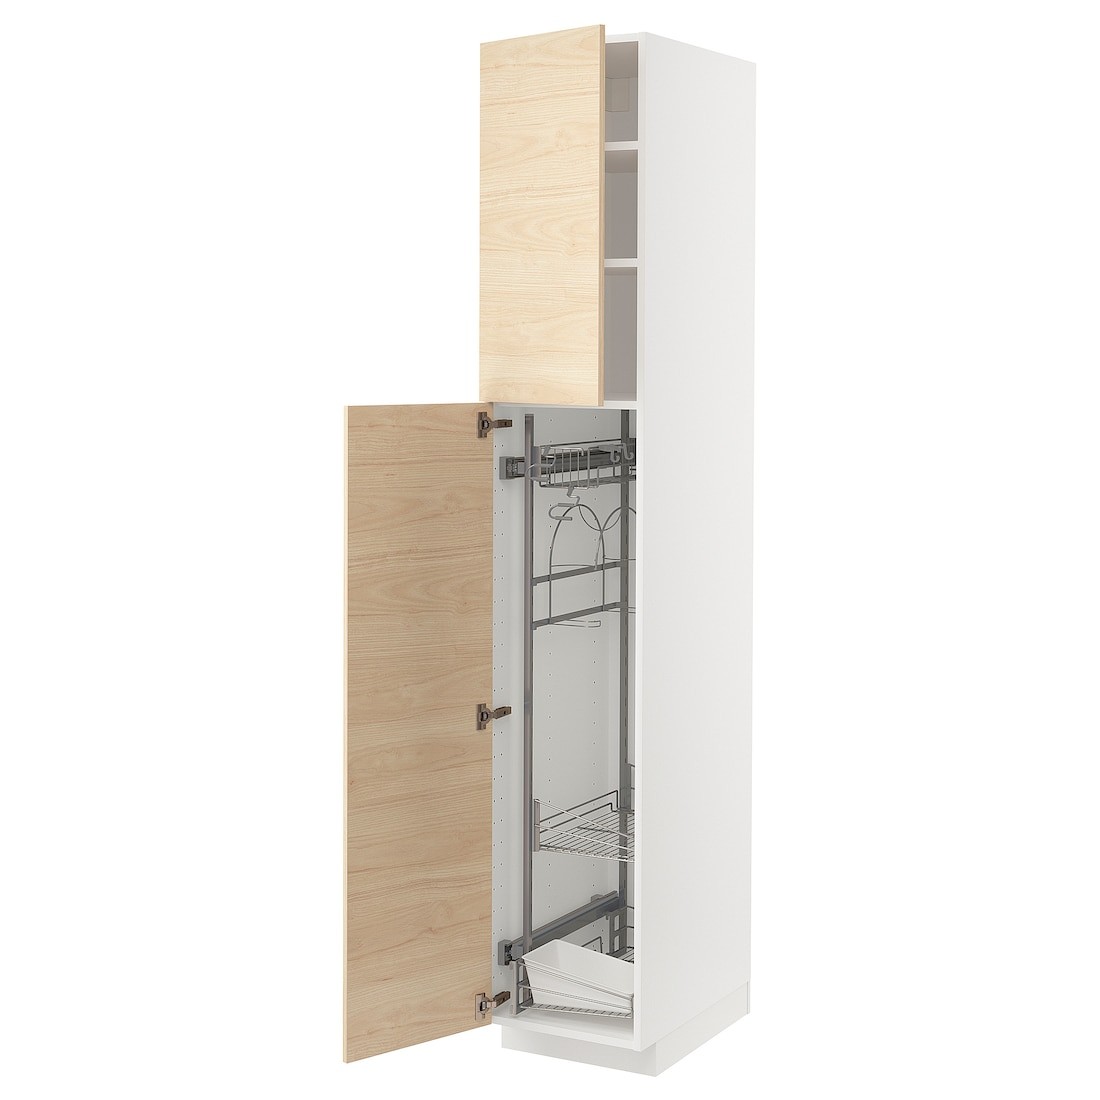 METOD МЕТОД Высокий шкаф с отделением для аксессуаров для уборки, белый / Askersund узор светлый ясень, 40x60x220 см